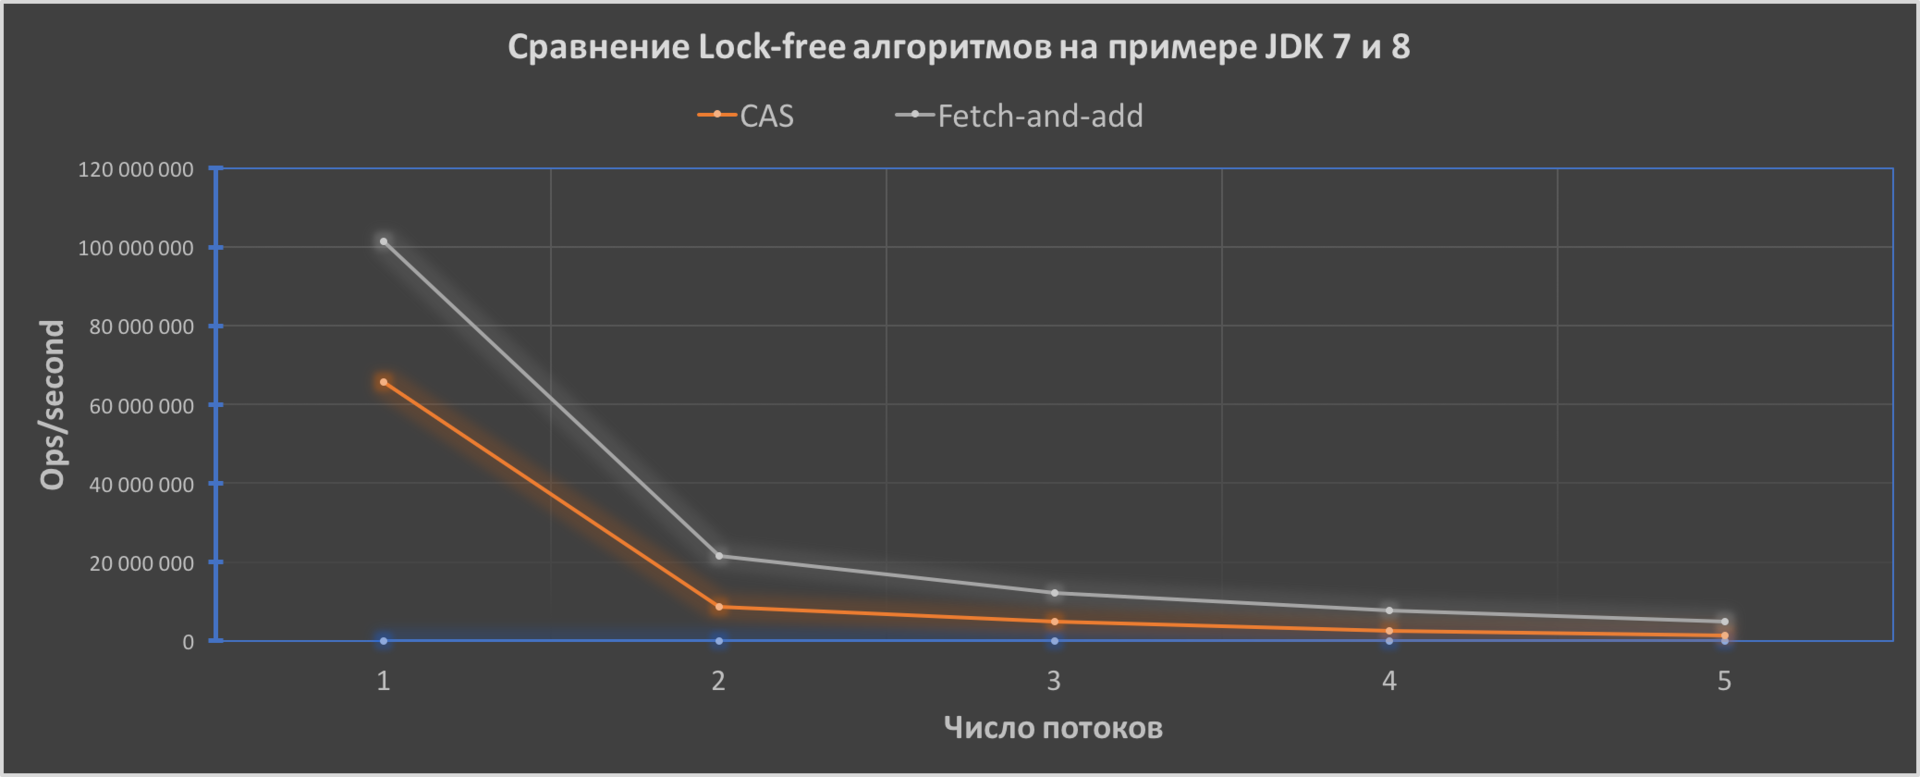 Сравнение Lock-free алгоритмов — CAS и FAA на примере JDK 7 и 8 - 1